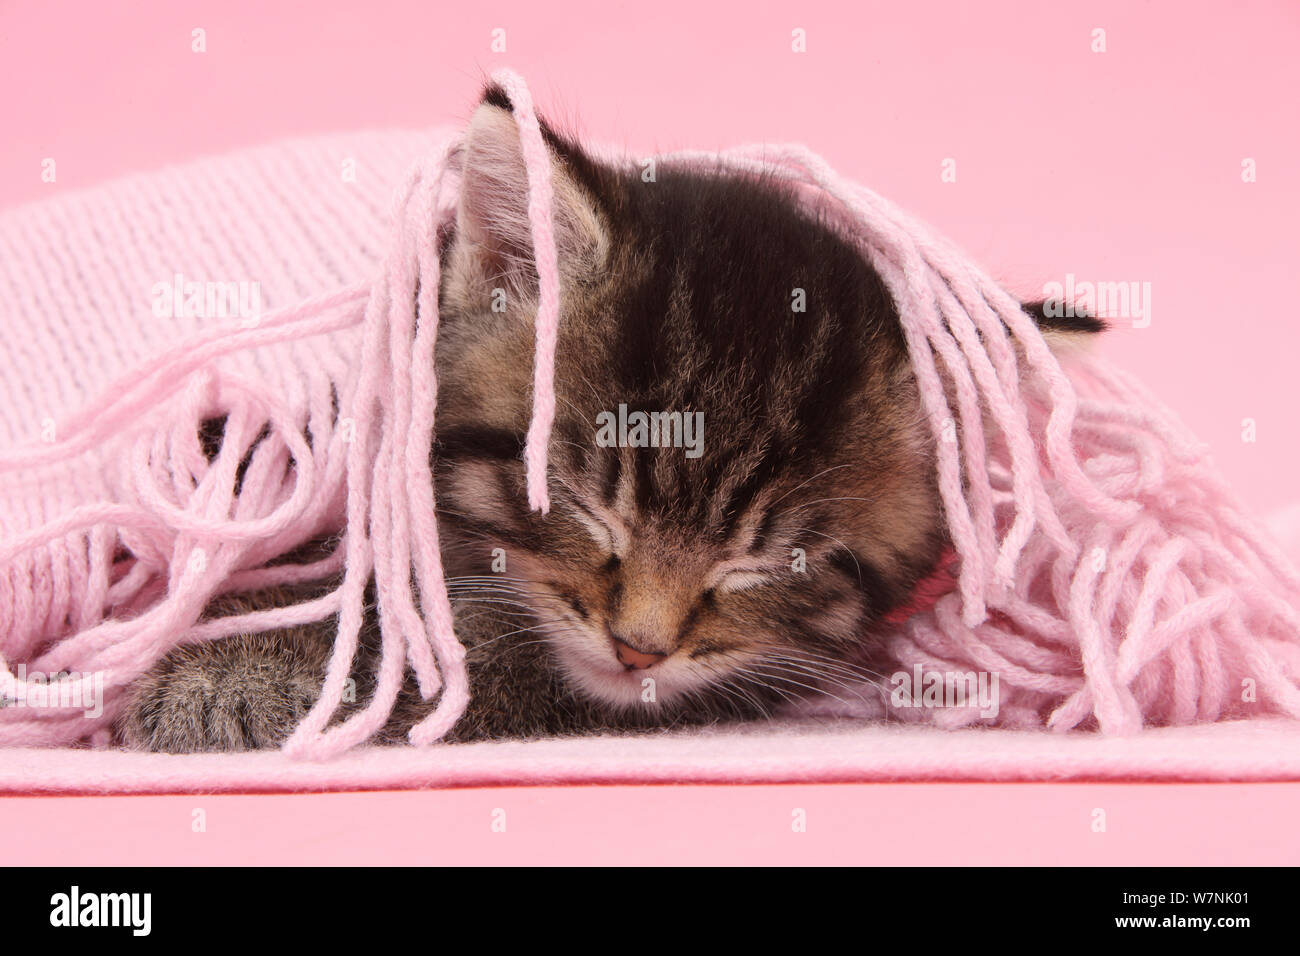 Lindo gatito atigrado, Fosset, 5 semanas, dormido bajo un pañuelo de color rosa. Foto de stock